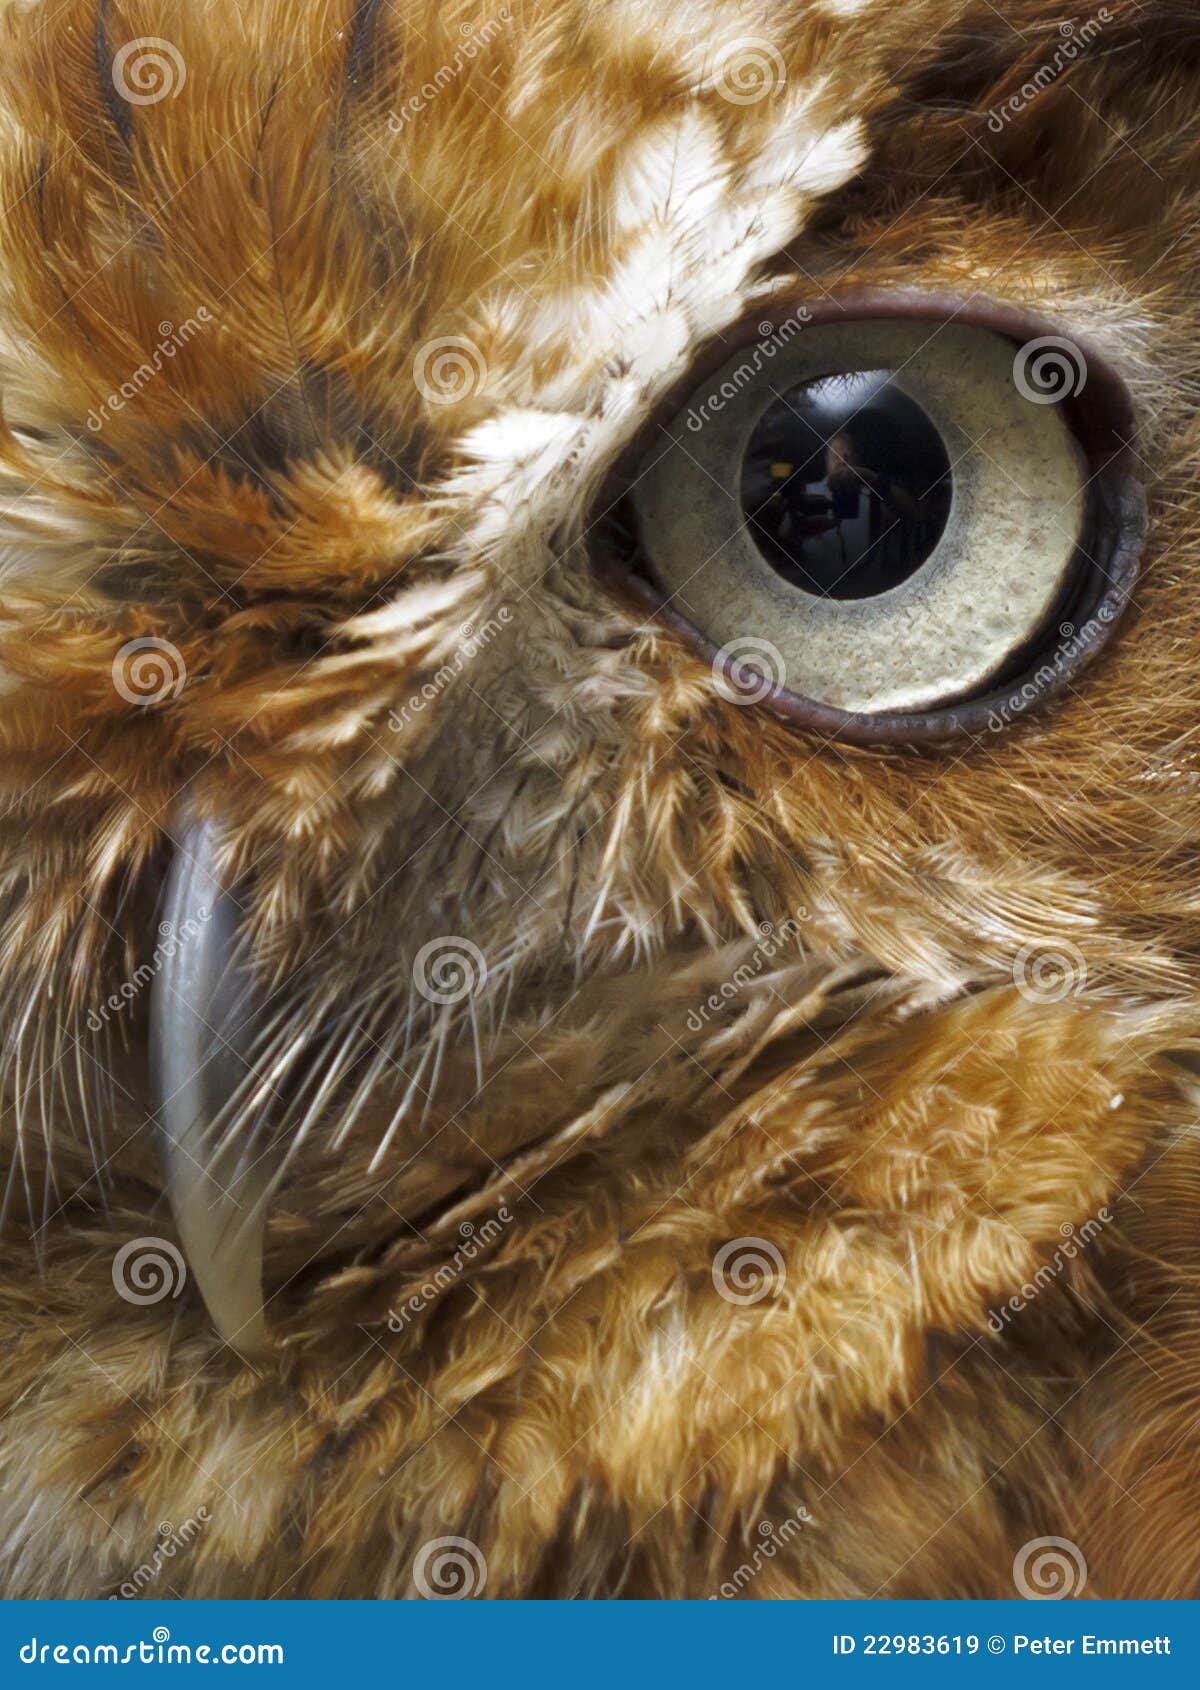 eye and beak of brown owl